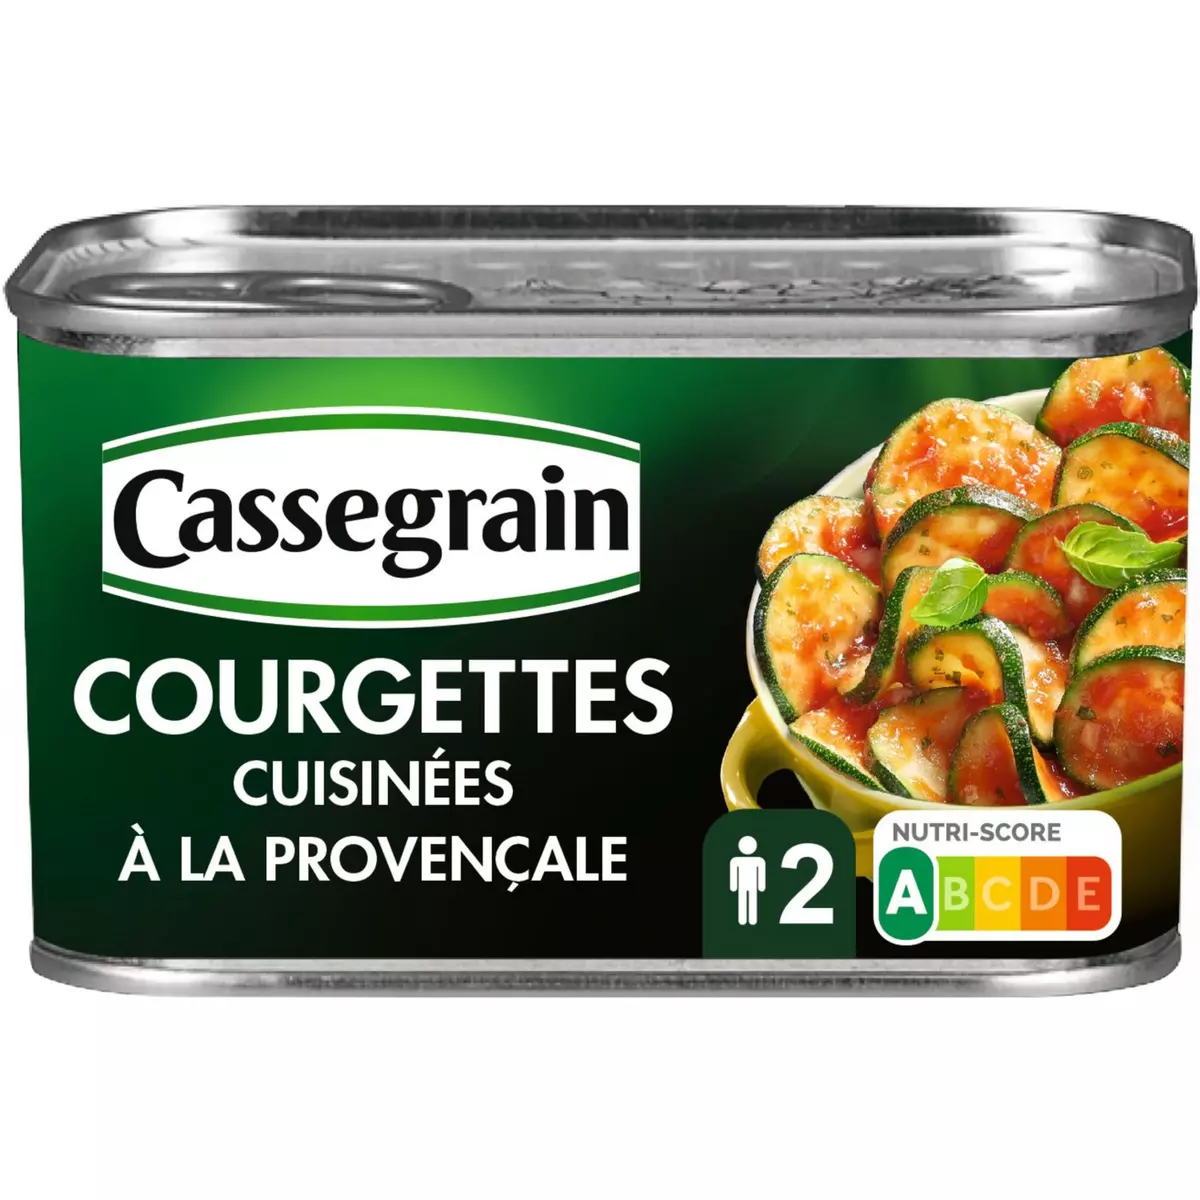 CASSEGRAIN Courgettes cuisinées à la provençale 375g